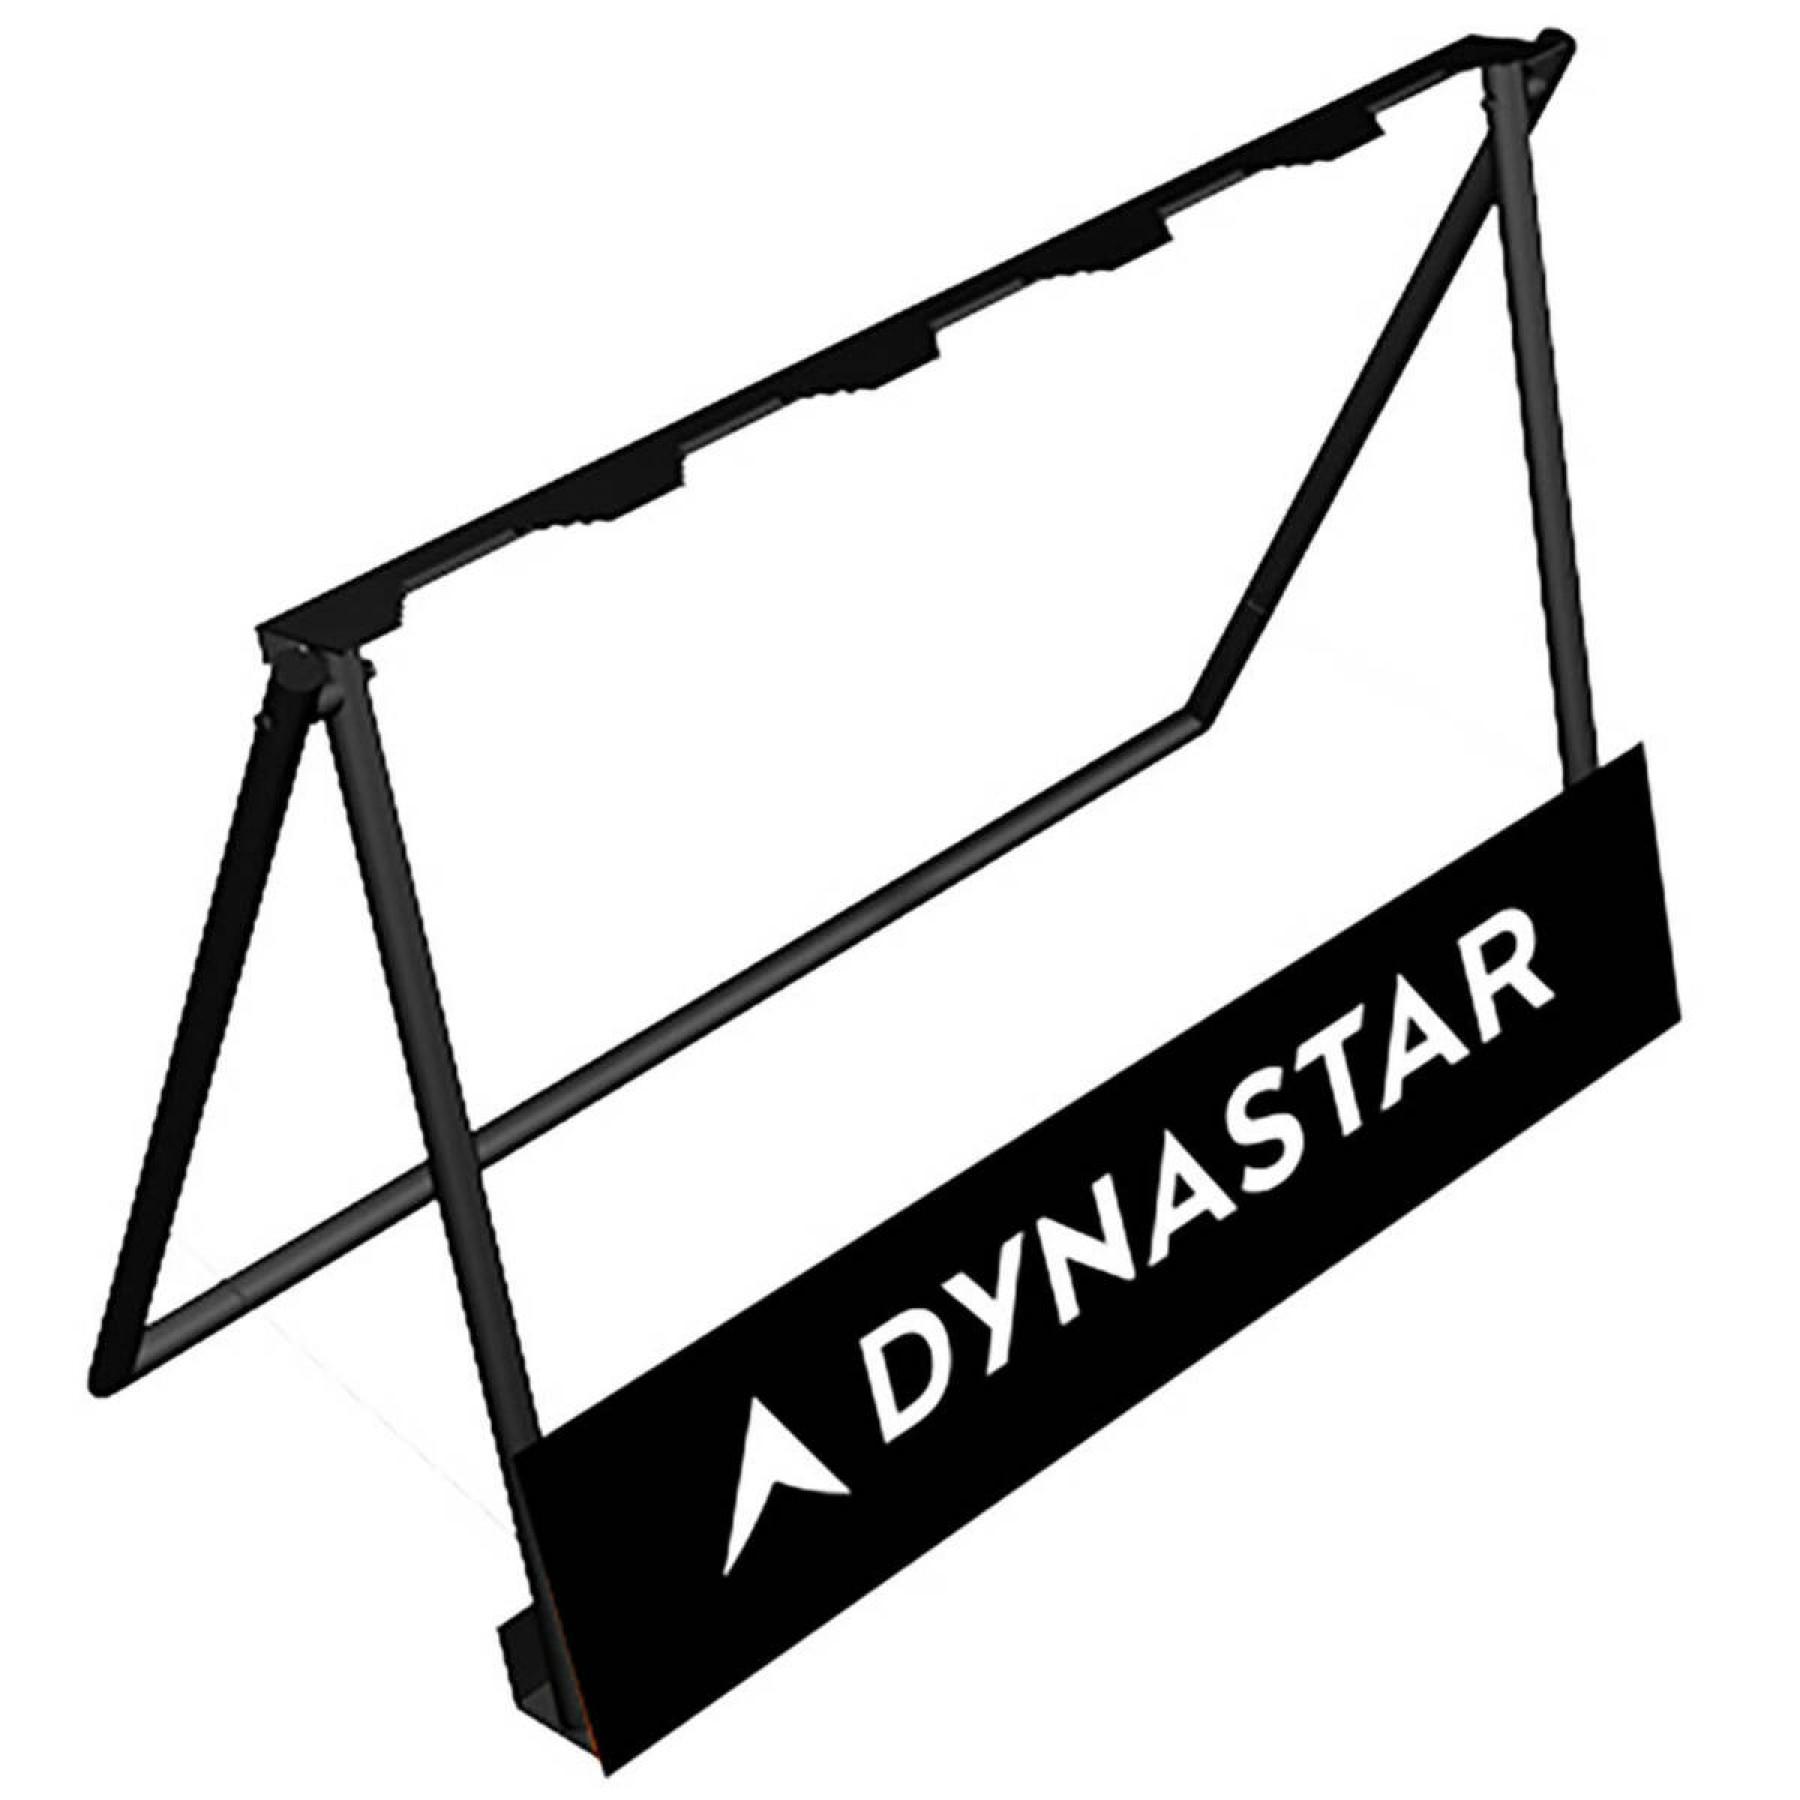 Supporto Dynastar pour 5 skis